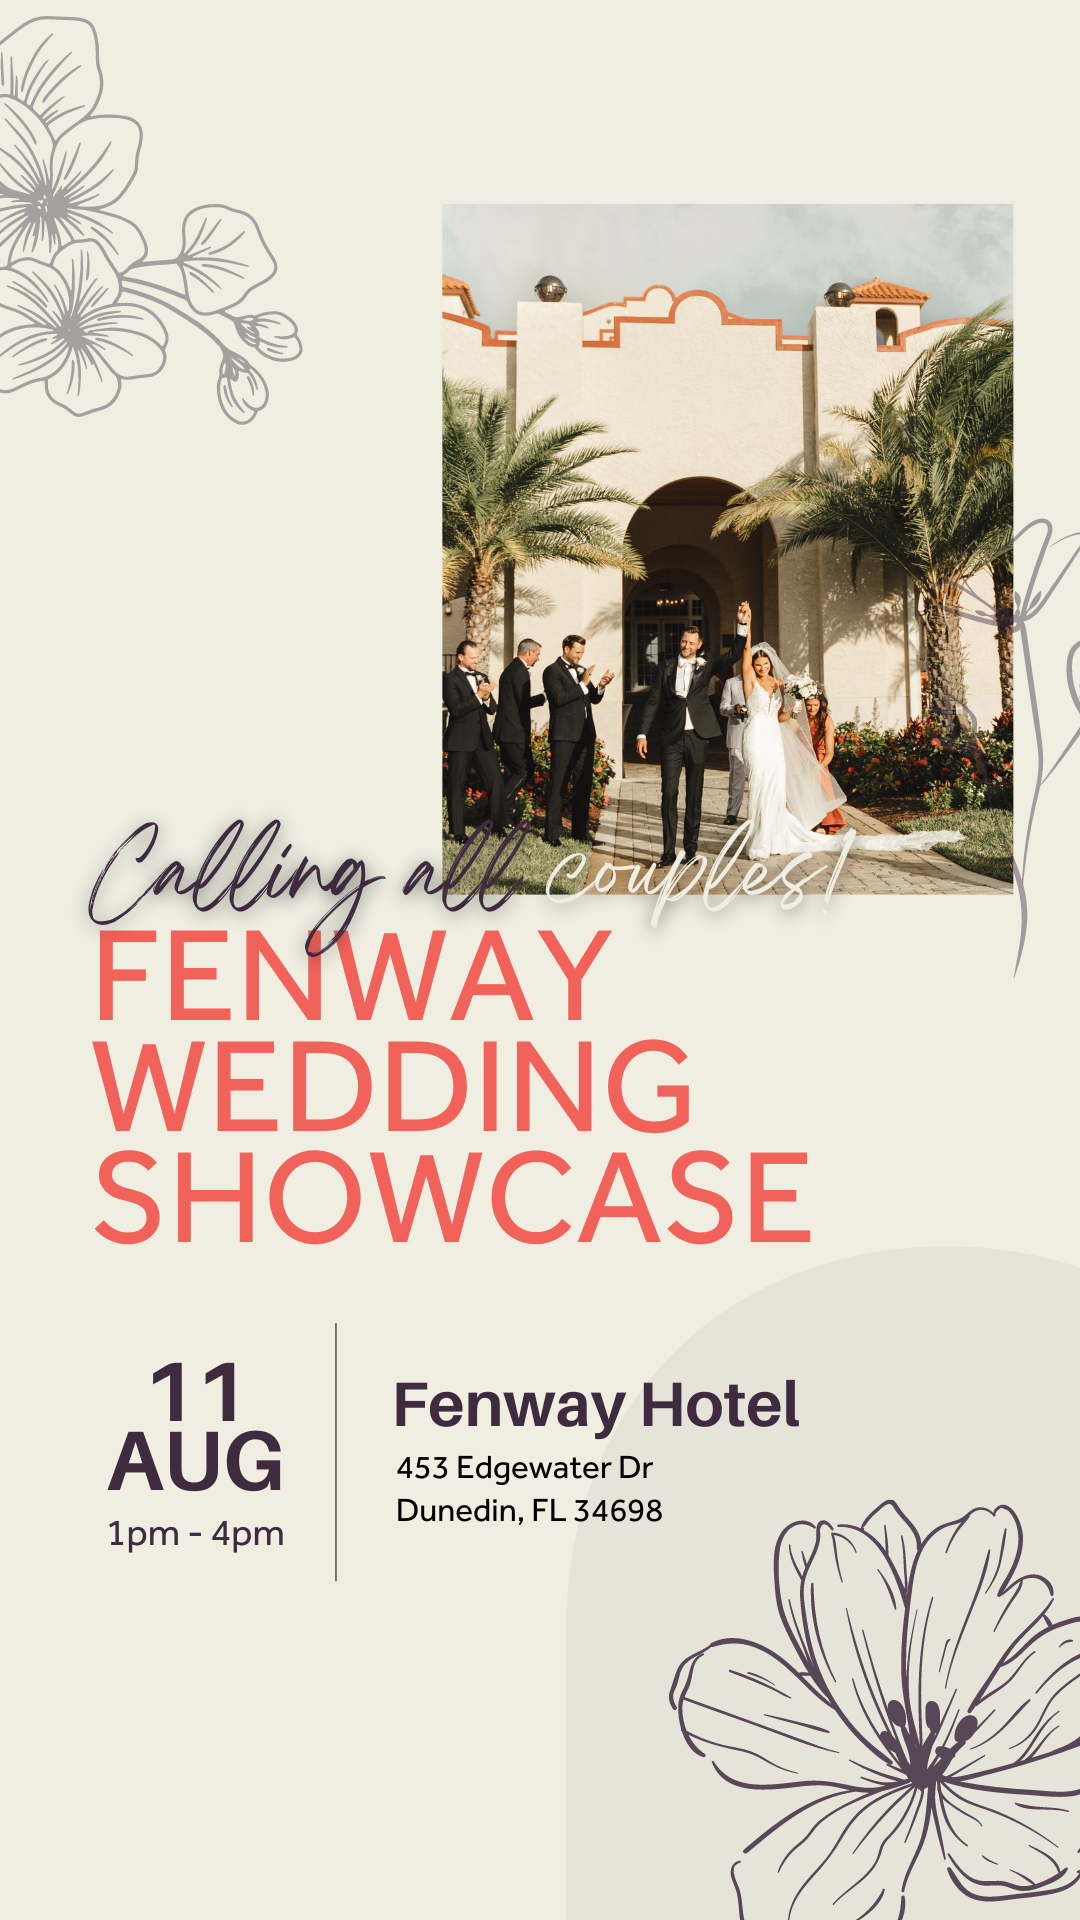 Fenway Wedding Showcase